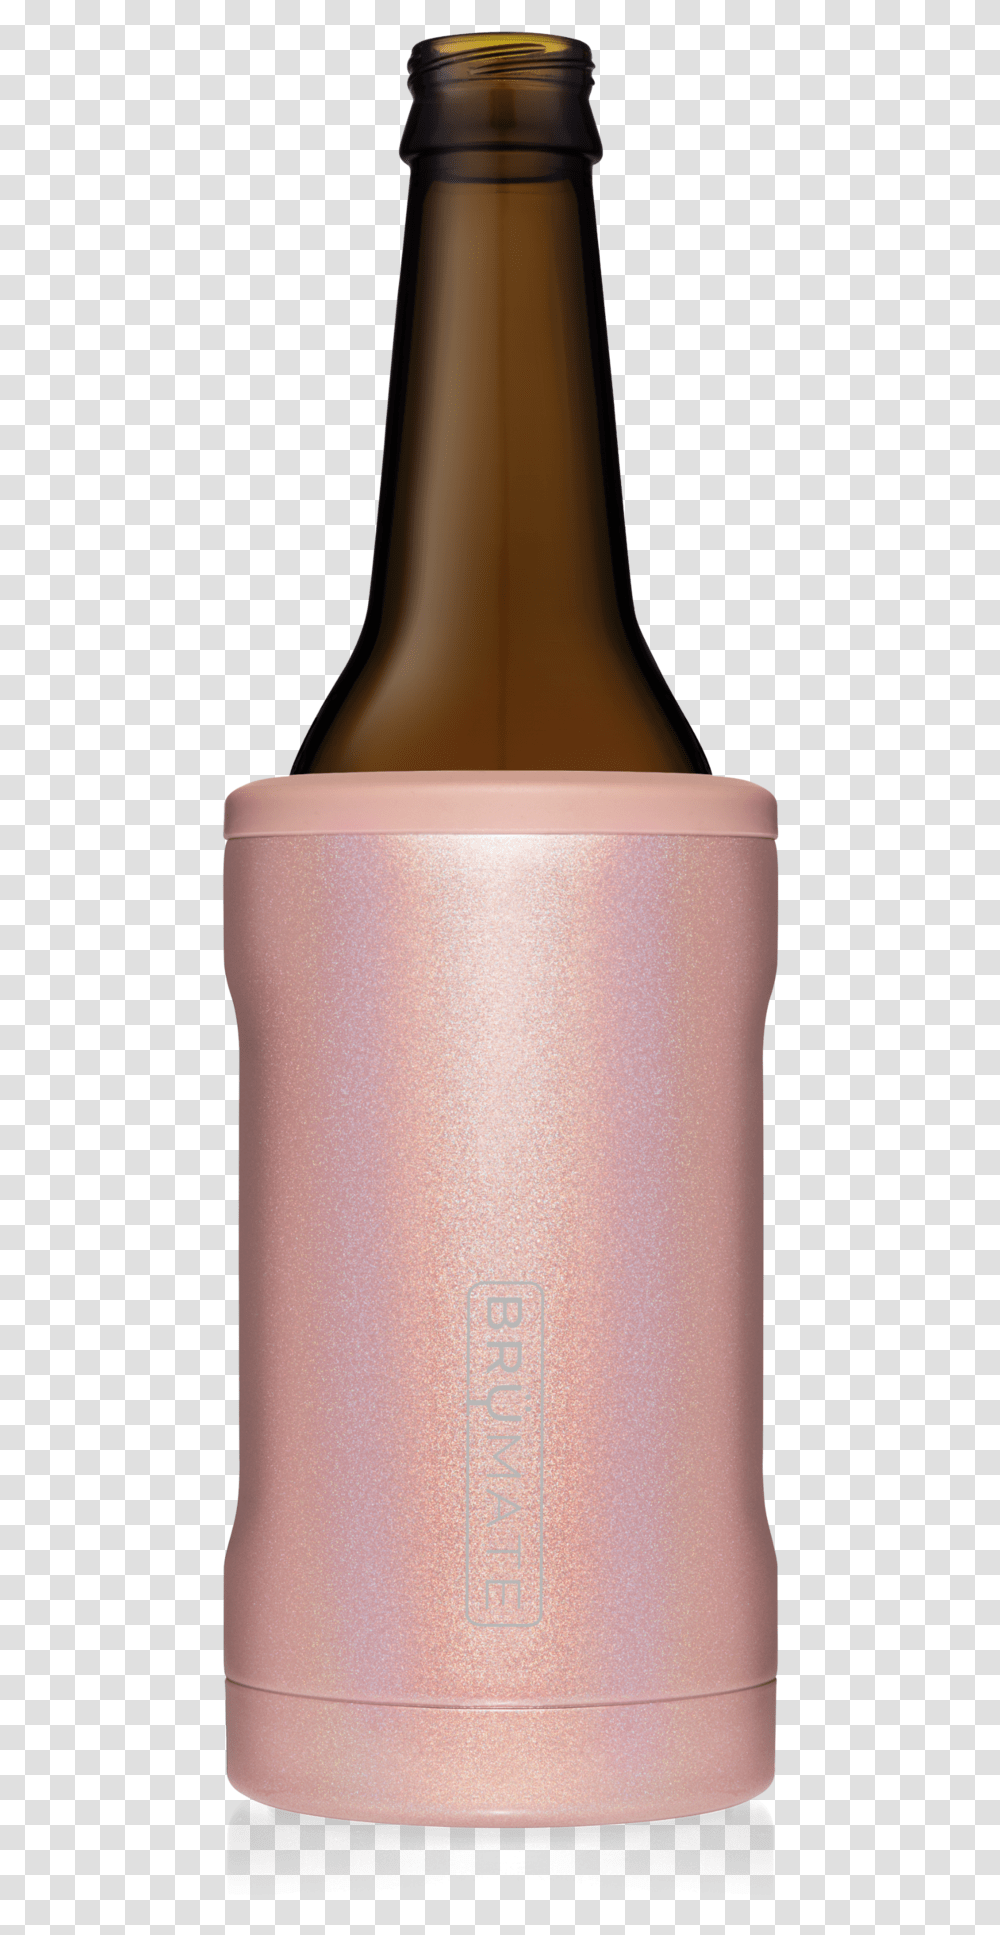 Brumate Rose Gold, Bottle, Alcohol, Beverage, Jar Transparent Png